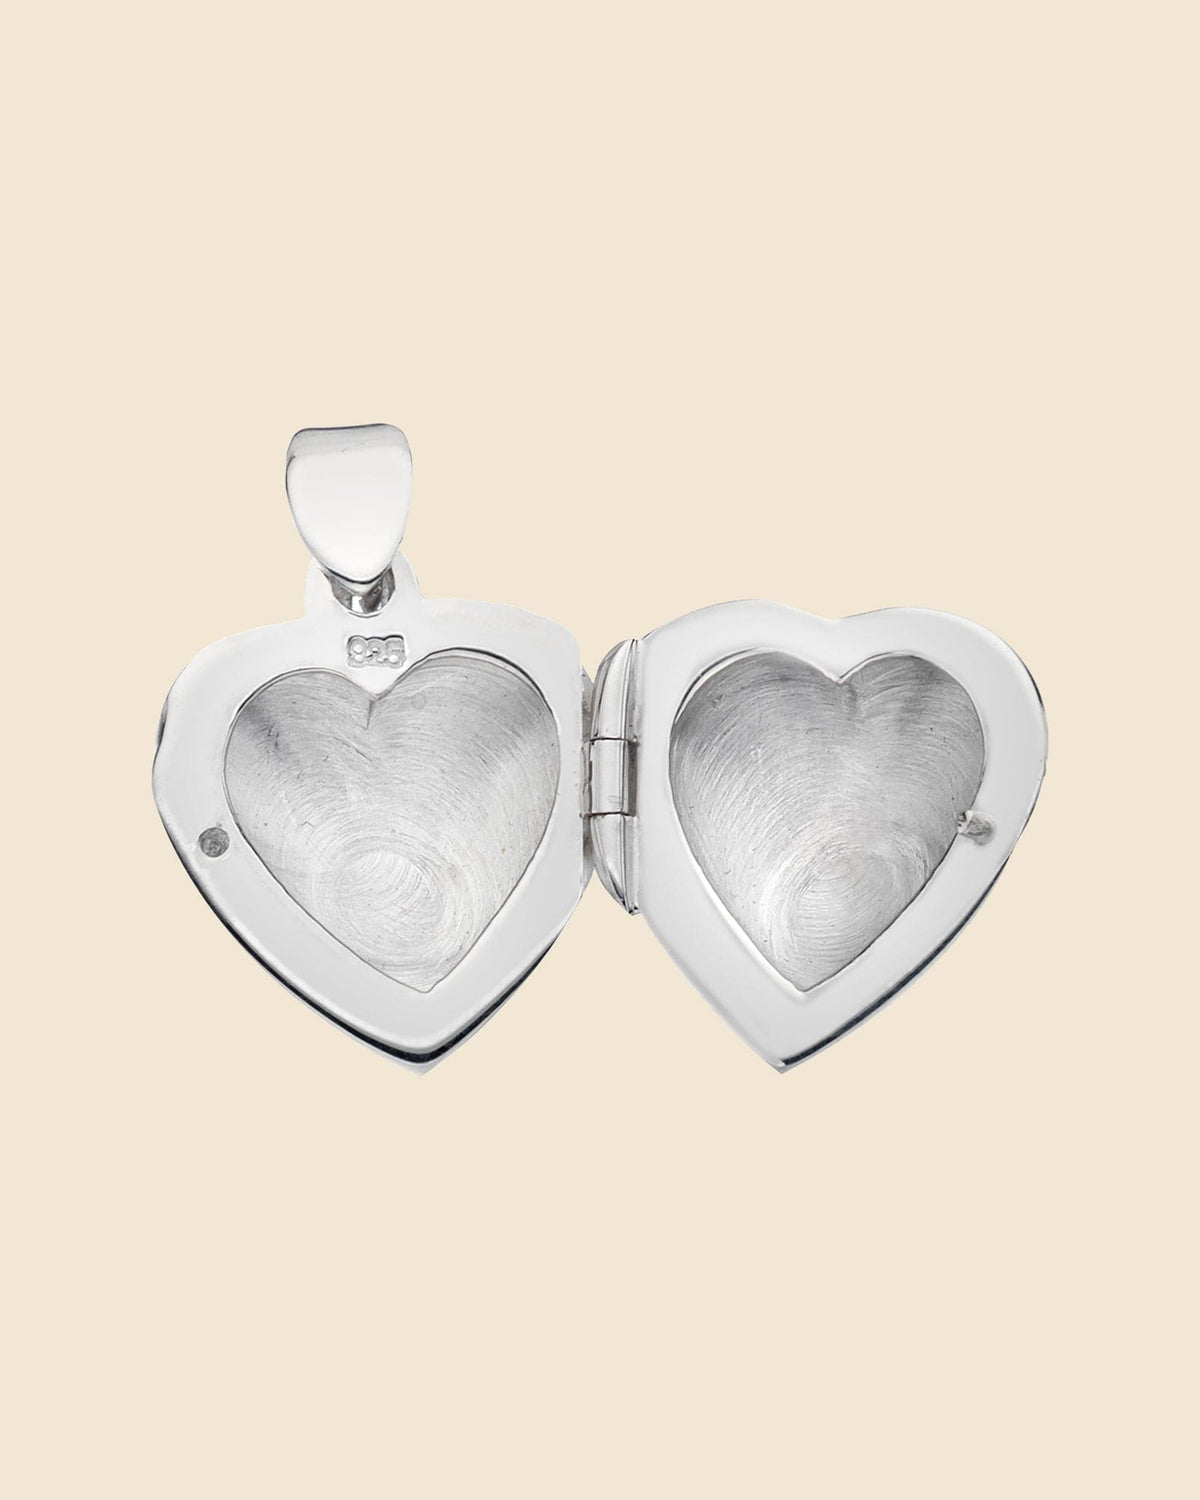 Sterling Silver Plain Heart Locket